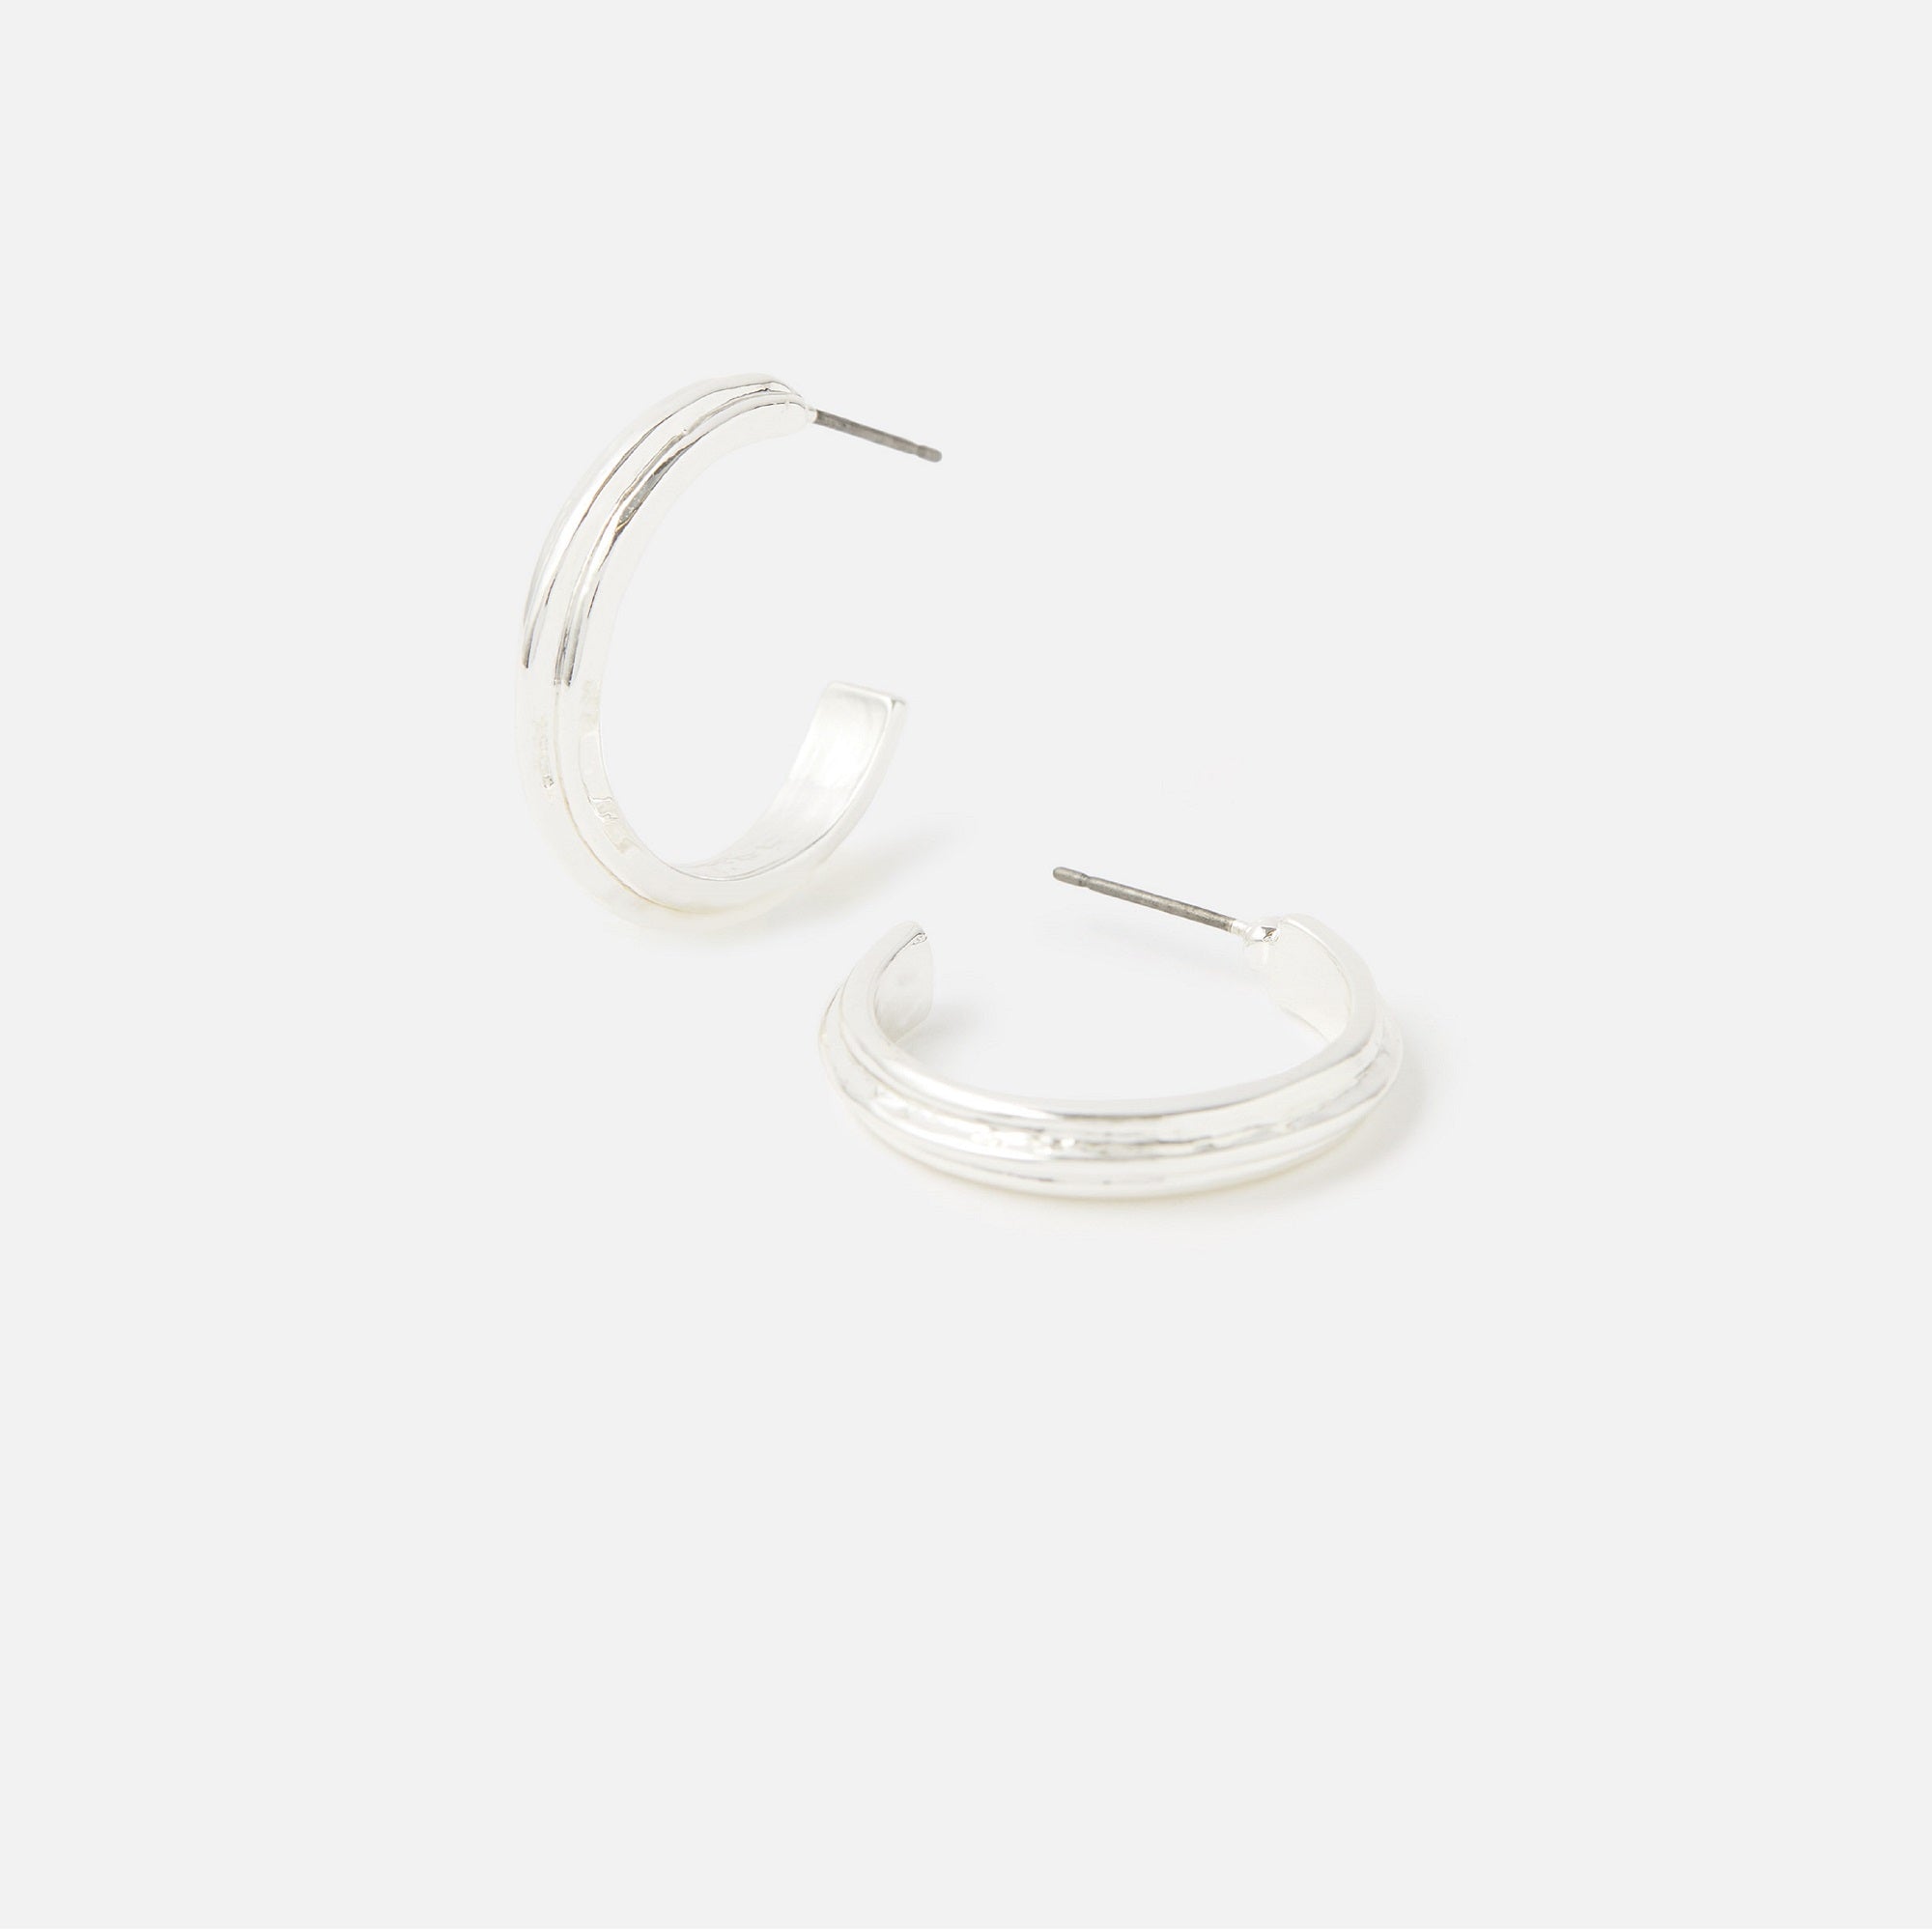 Accessorize London Women's Line Indent Hoop Earrings